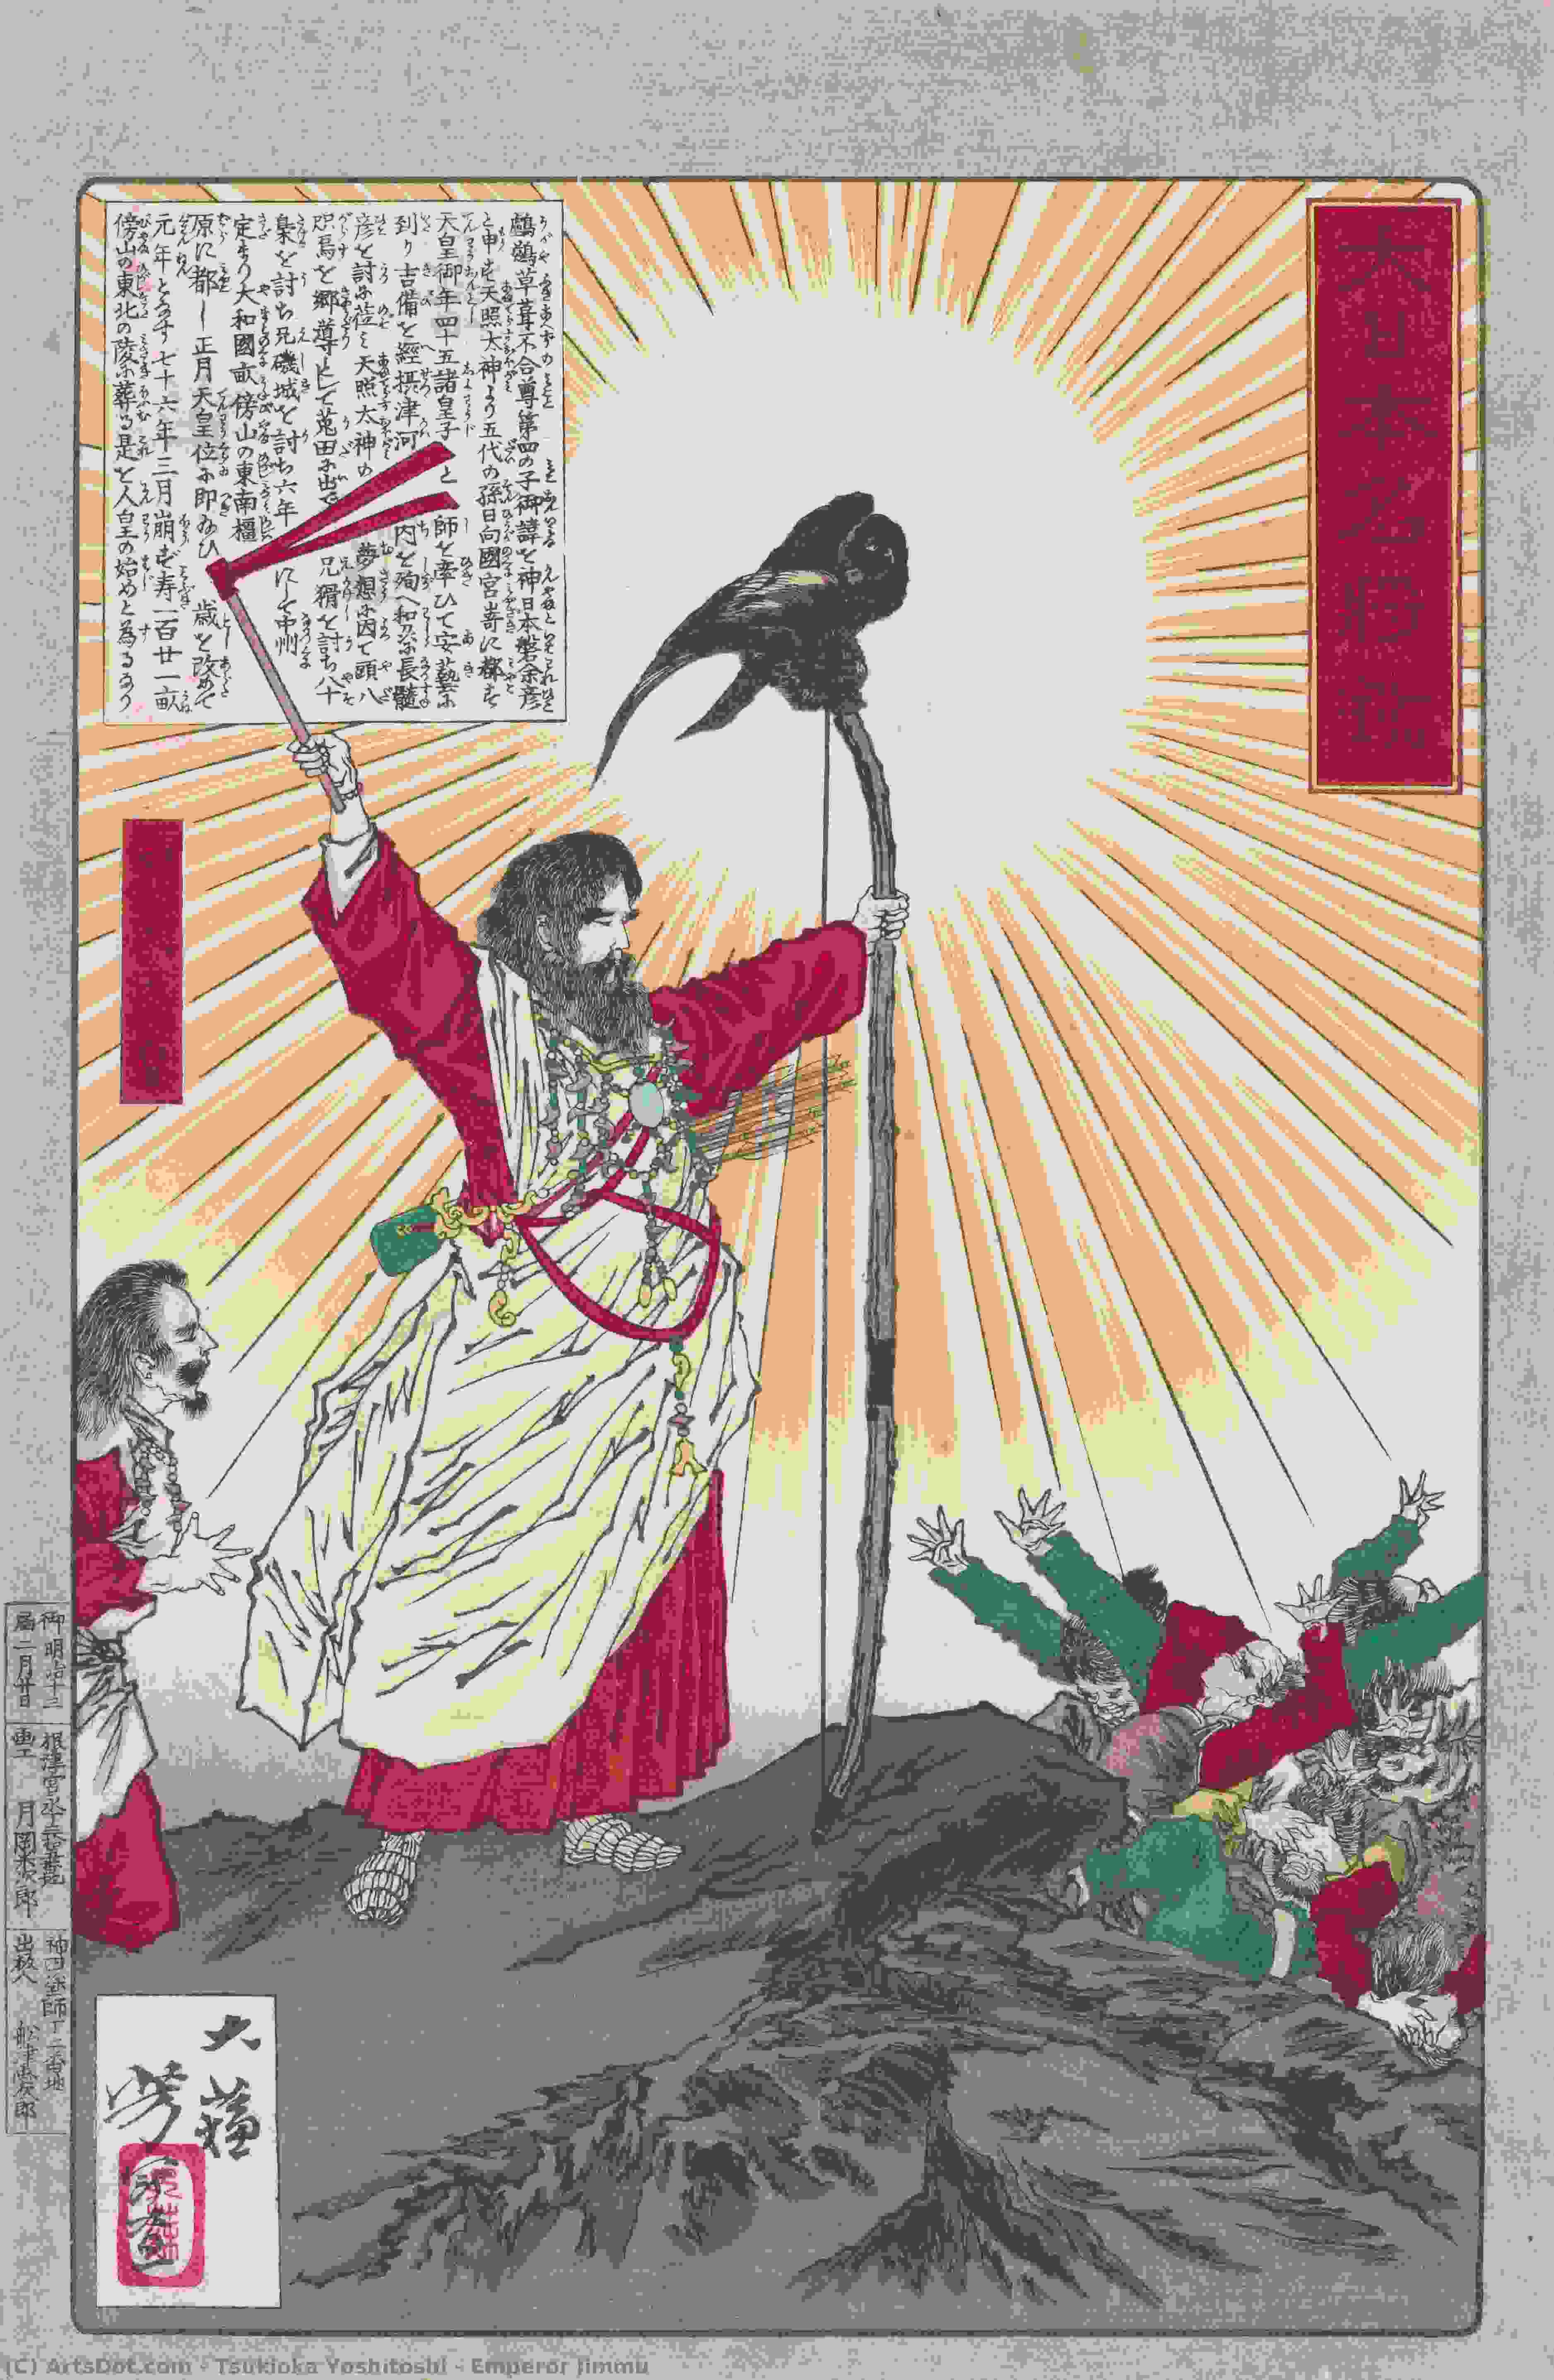 WikiOO.org - Encyclopedia of Fine Arts - Maleri, Artwork Tsukioka Yoshitoshi - Emperor Jimmu